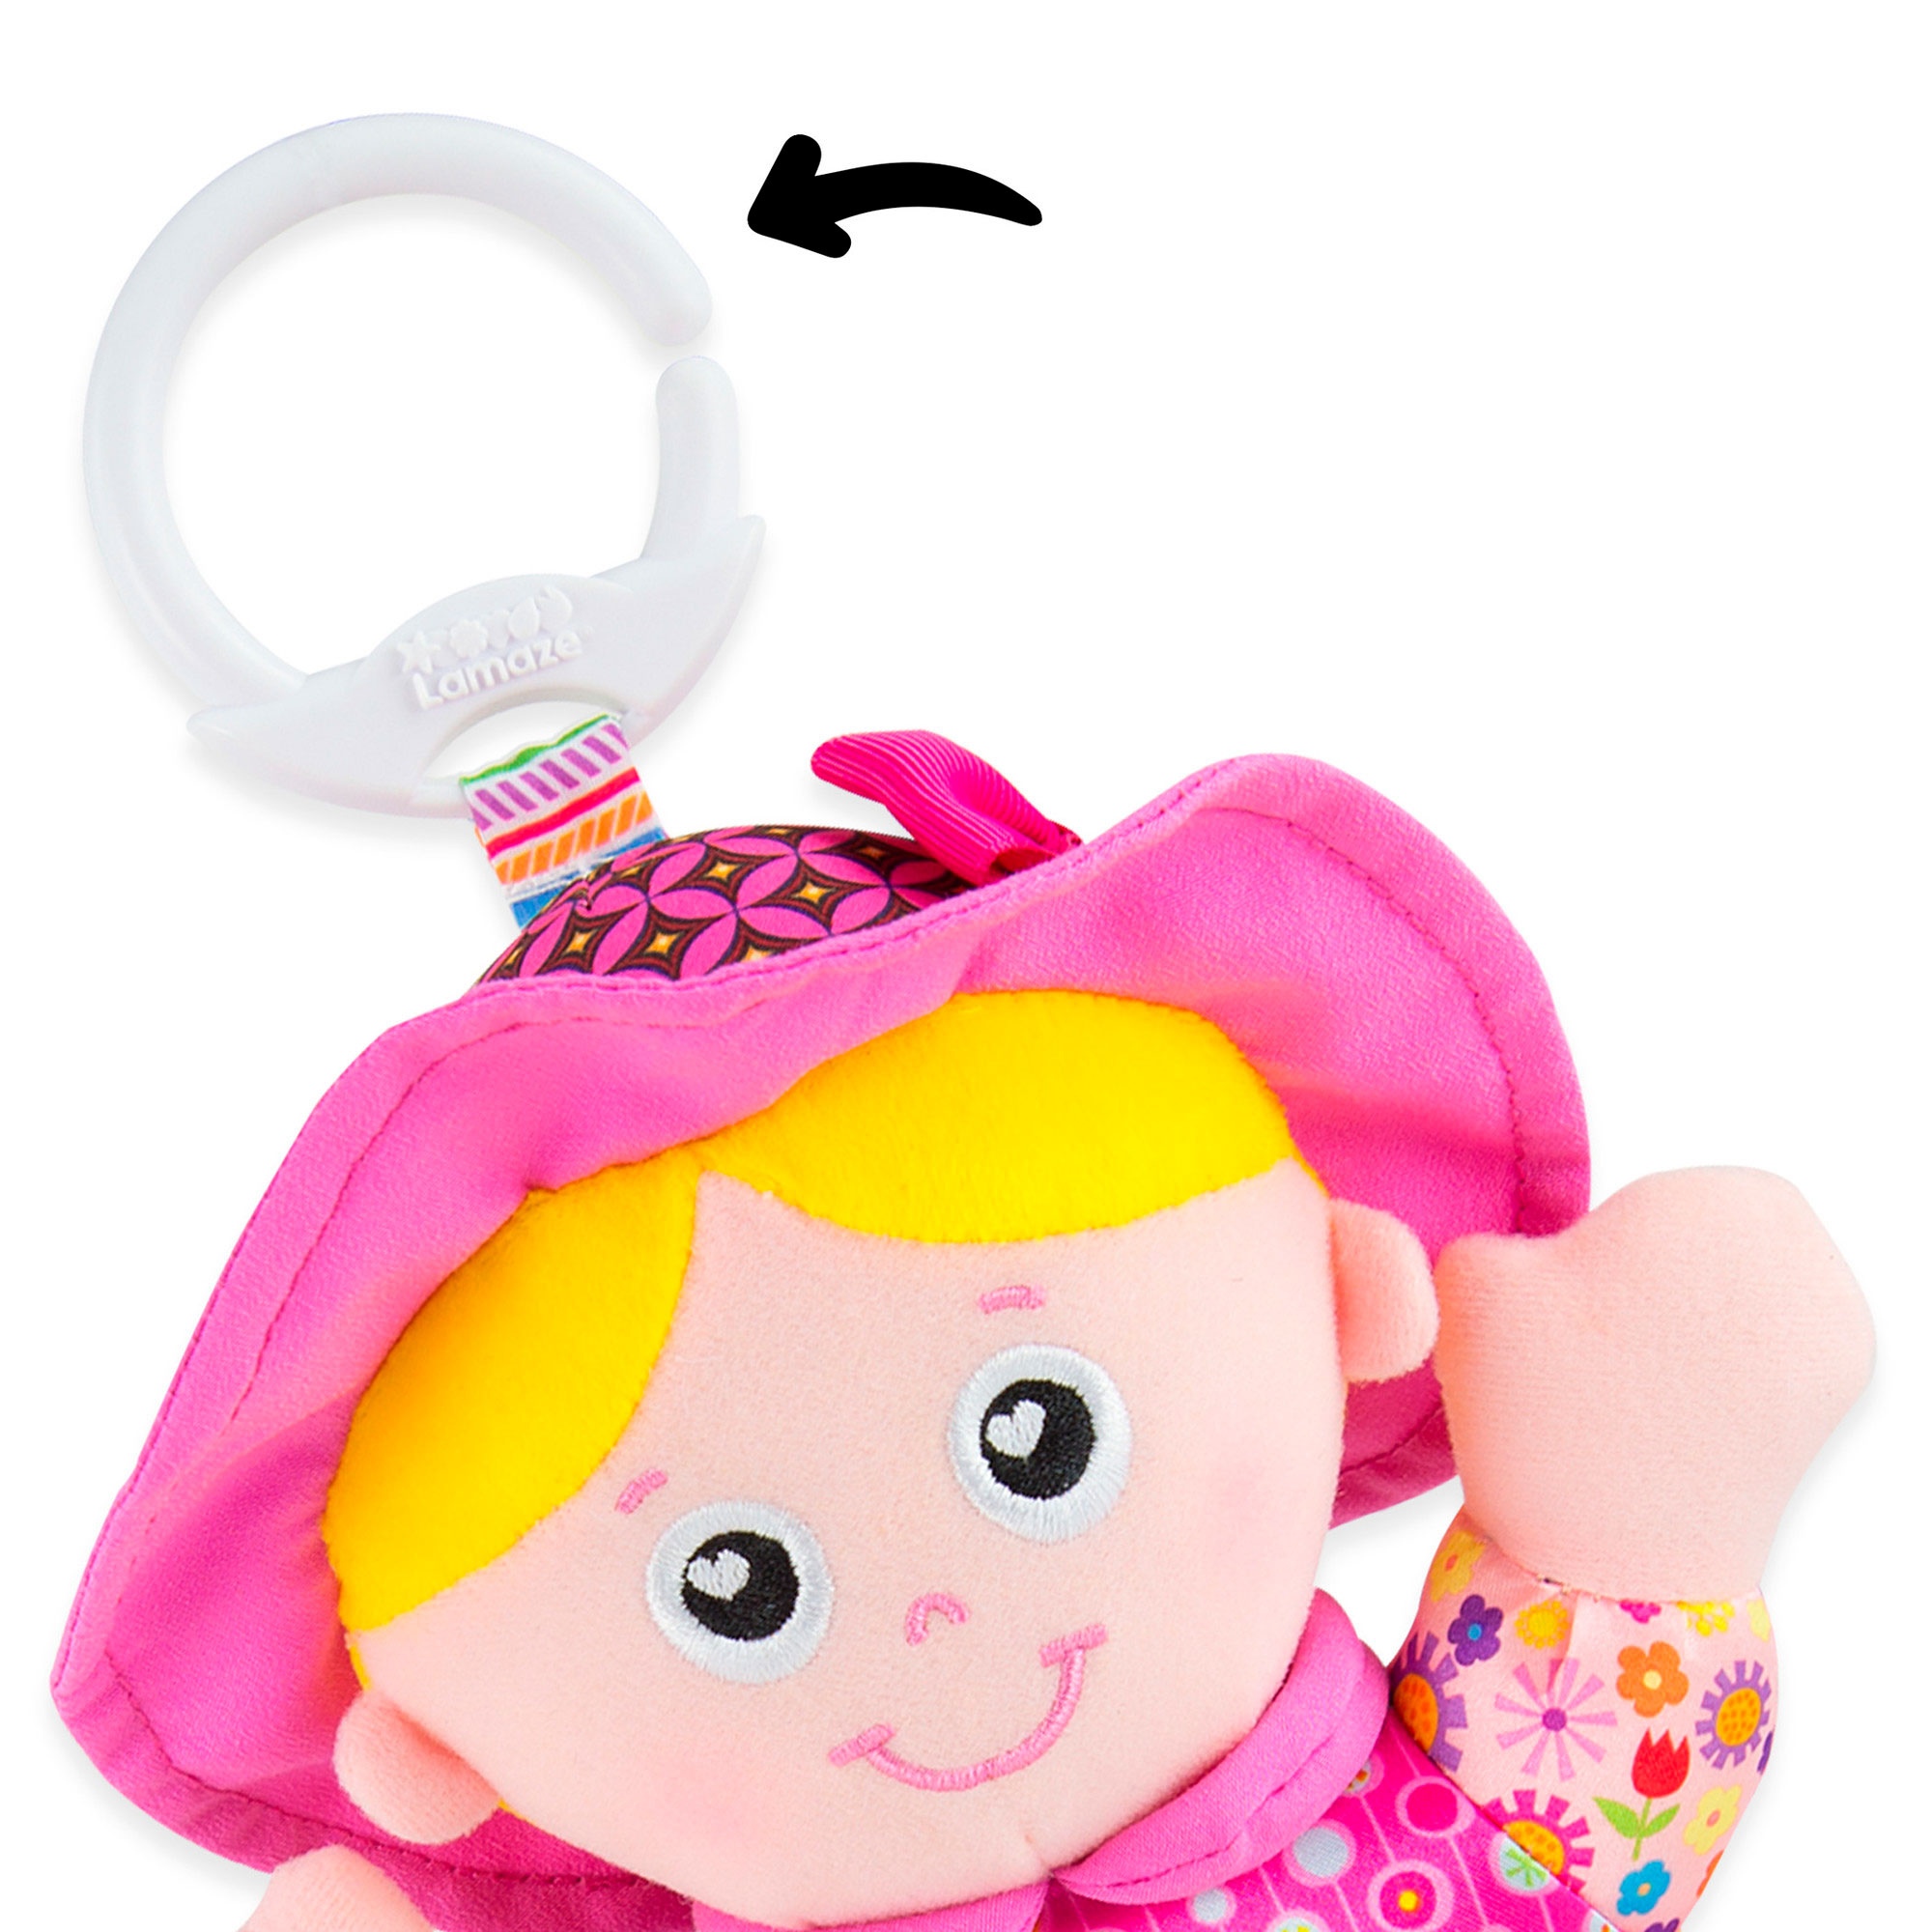 М'яка іграшка-підвіска Lamaze Лялька Емілі з брязкальцем (L27026)